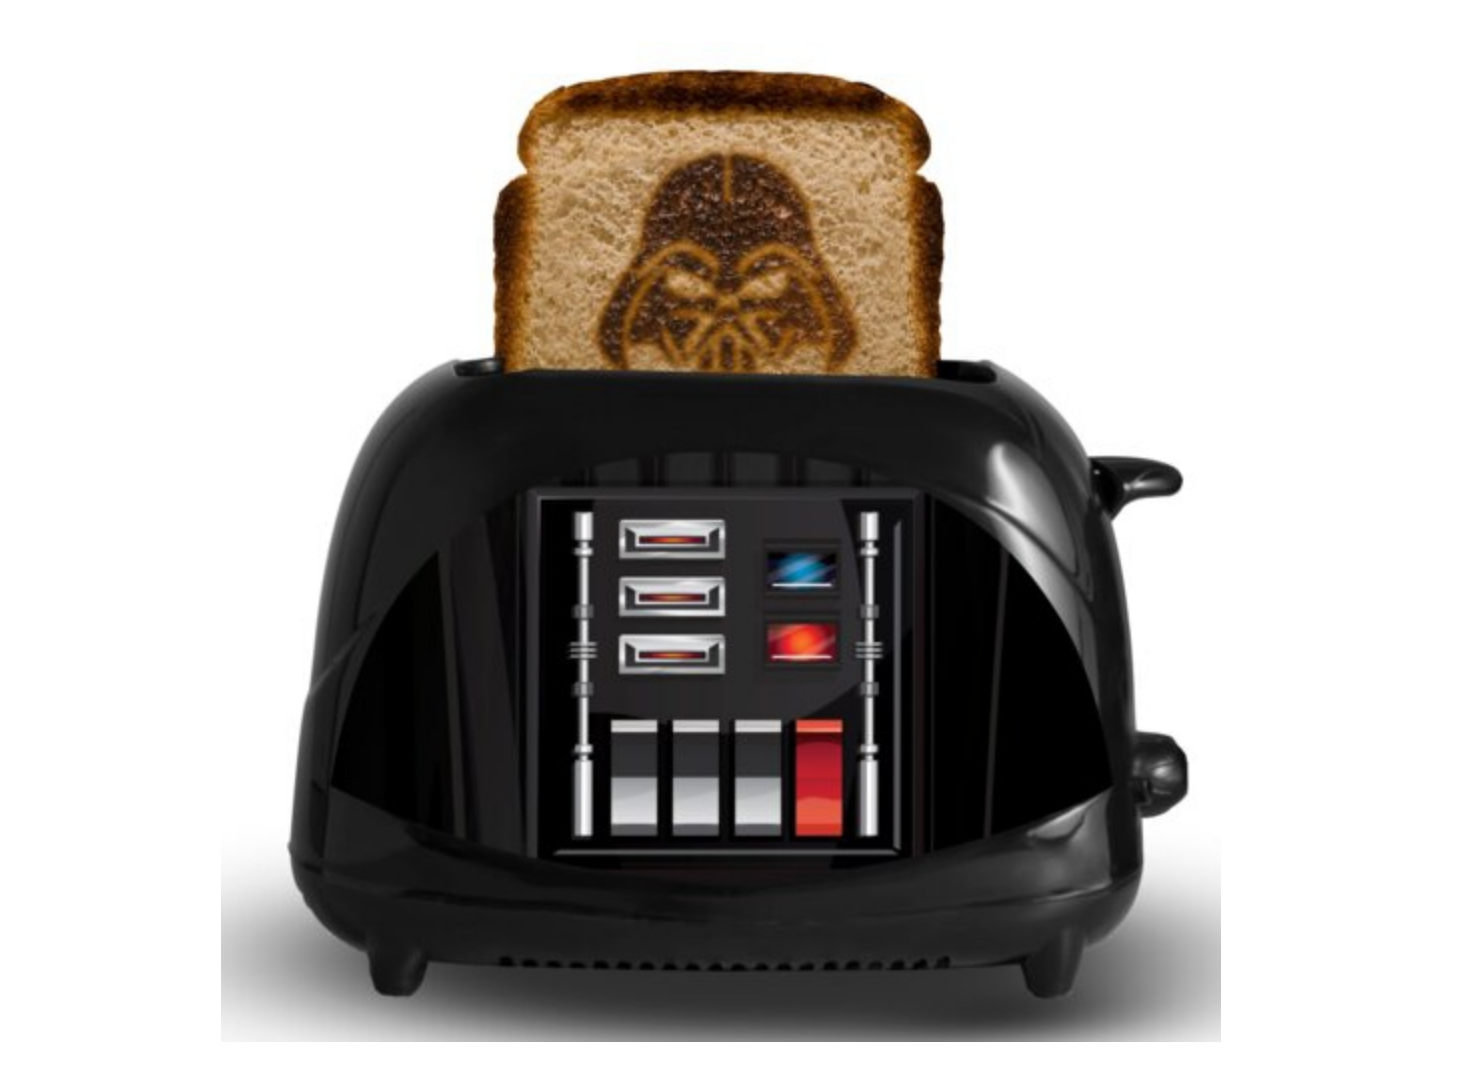 Star Wars Death Star Toaster